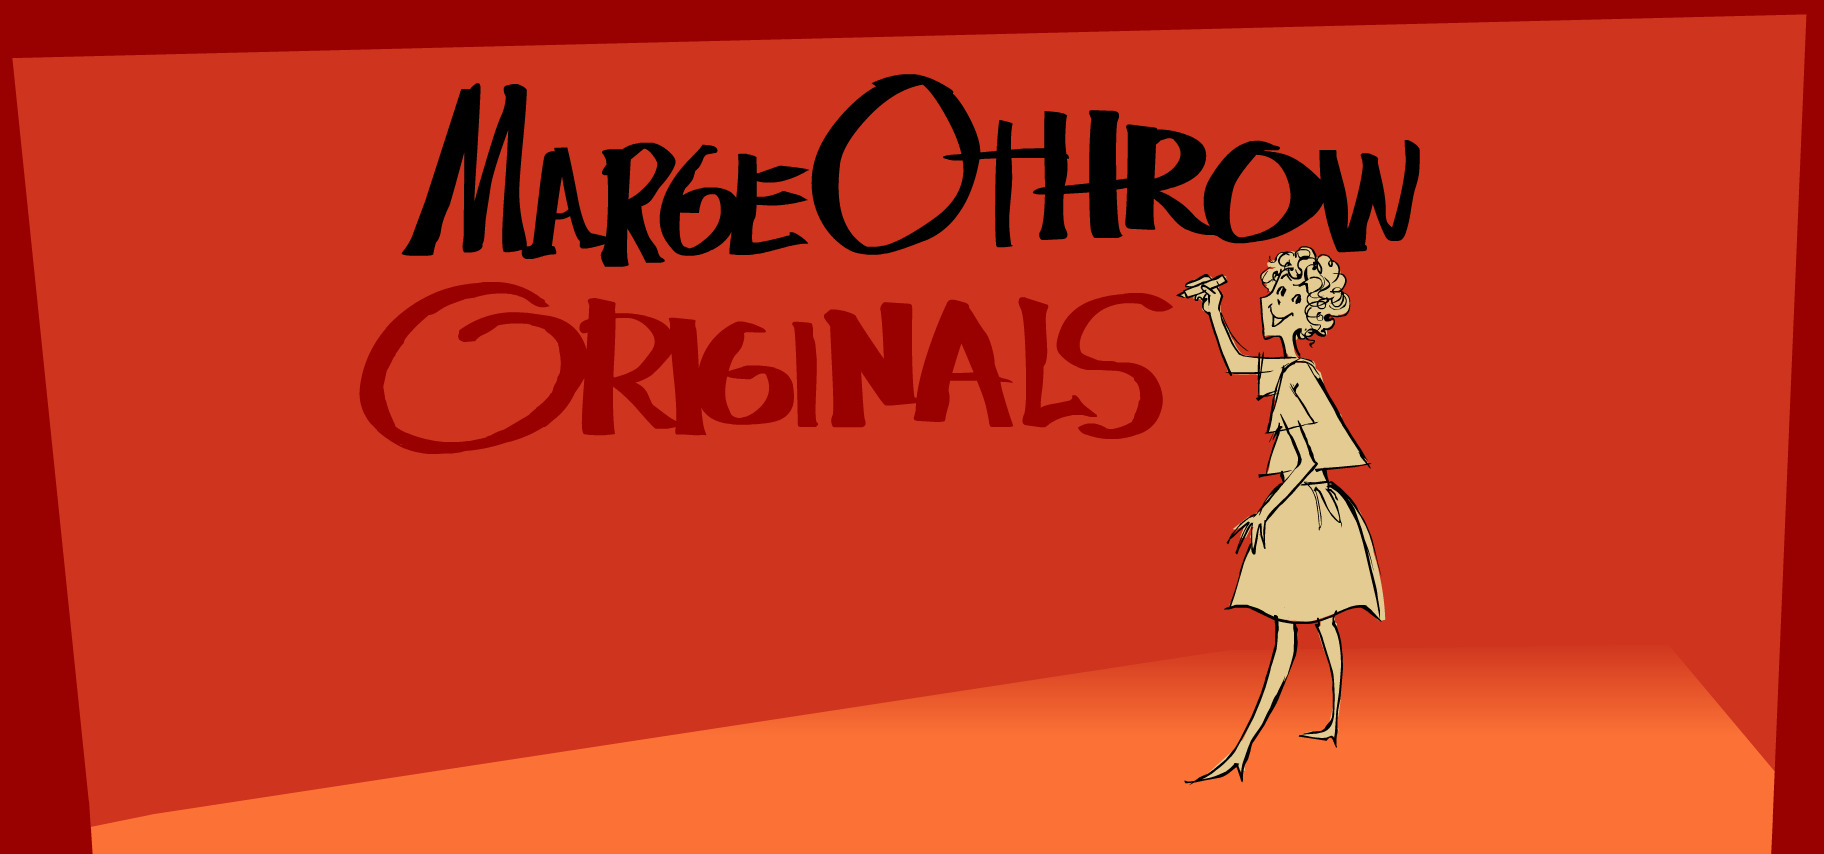 Othrow Originals - Welcome